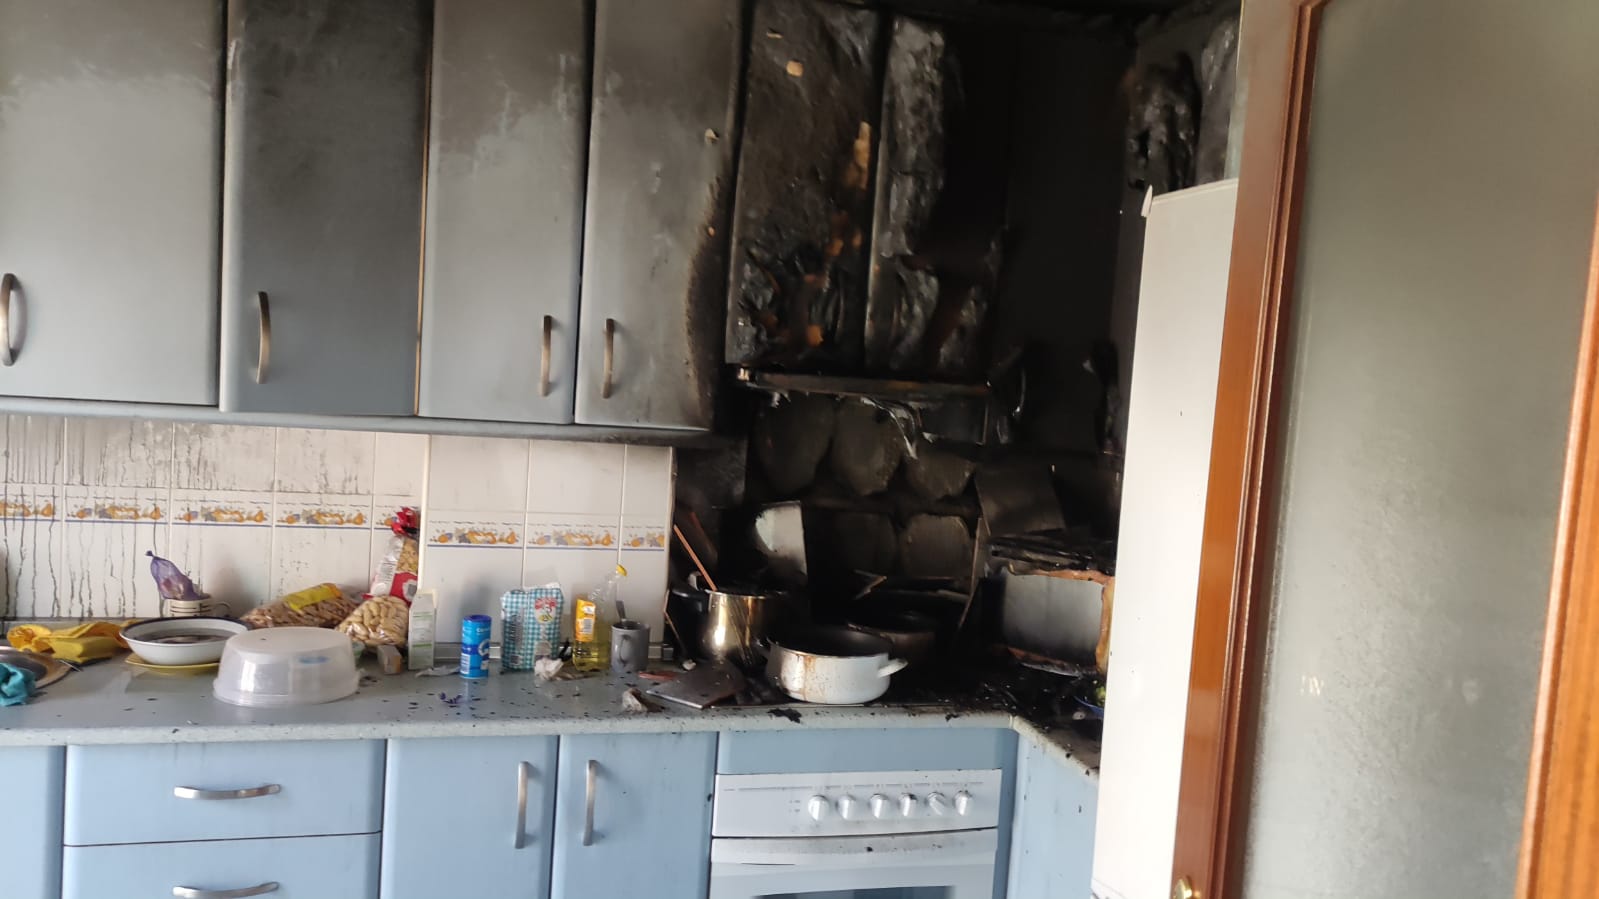 Cocina afectada por incendio en Sanlúcar.